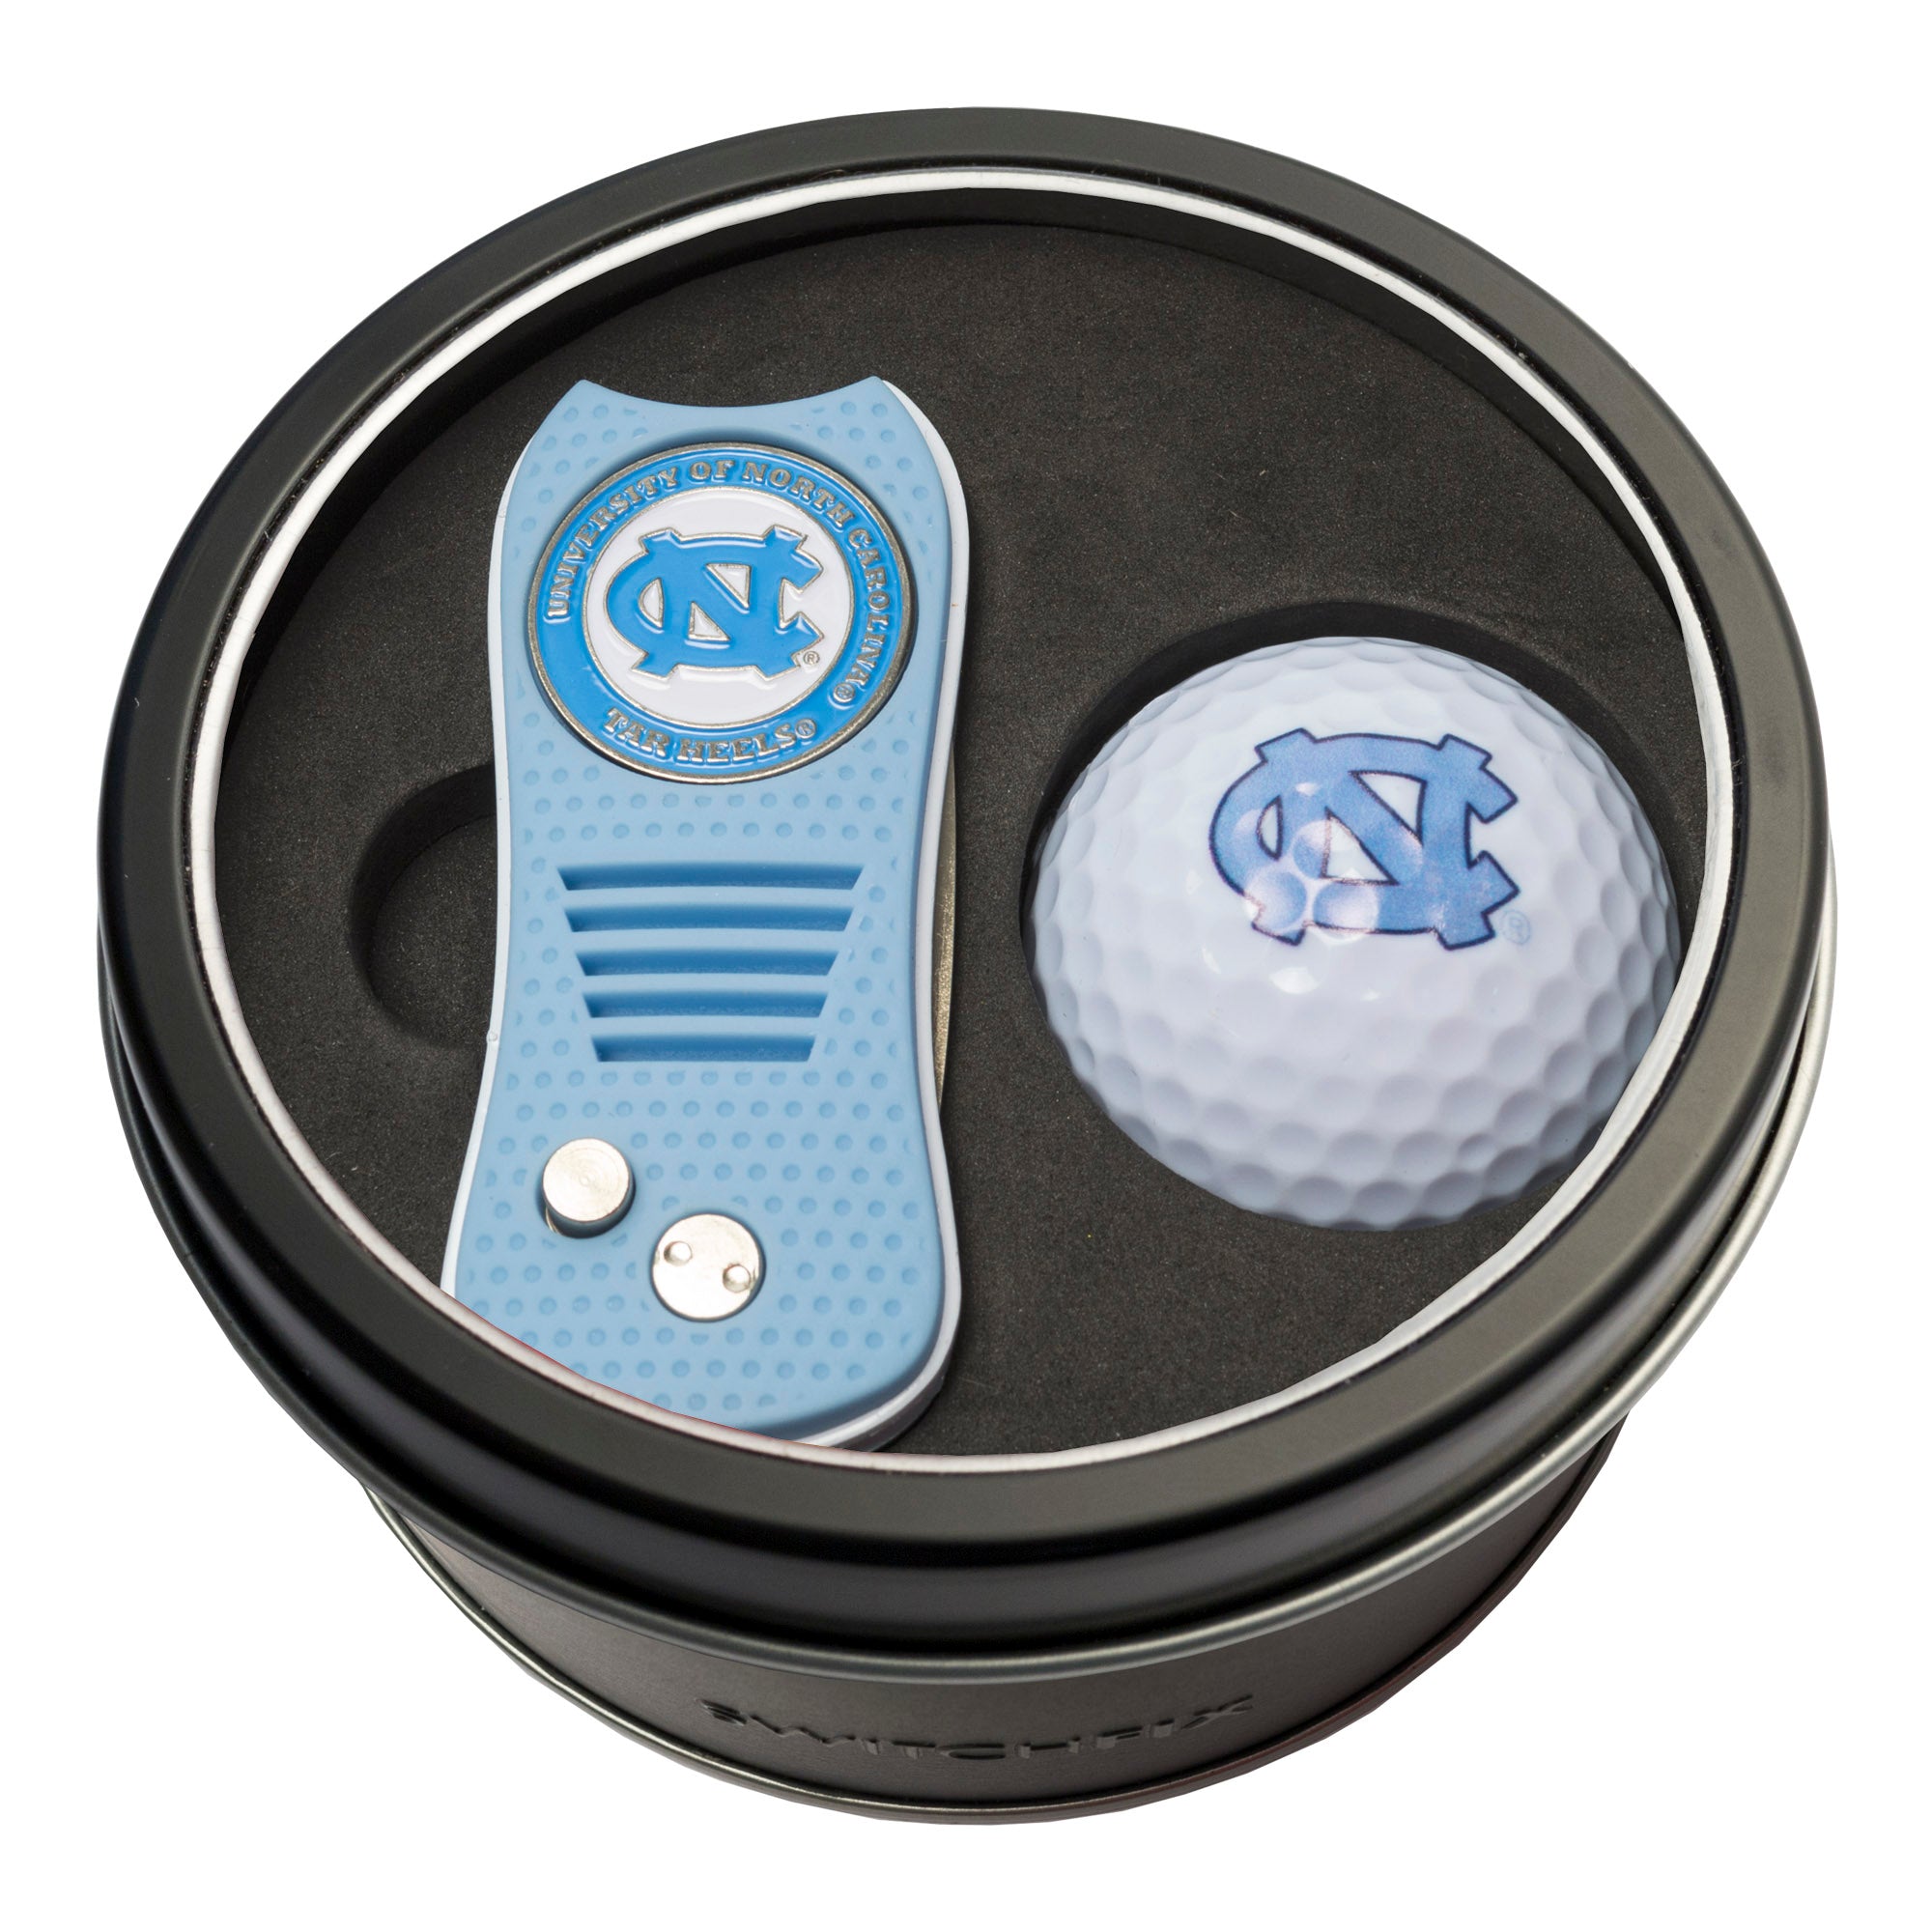 North Carolina Tar Heels Switchblade Divot Tool + Golf Ball Tin Gift Set